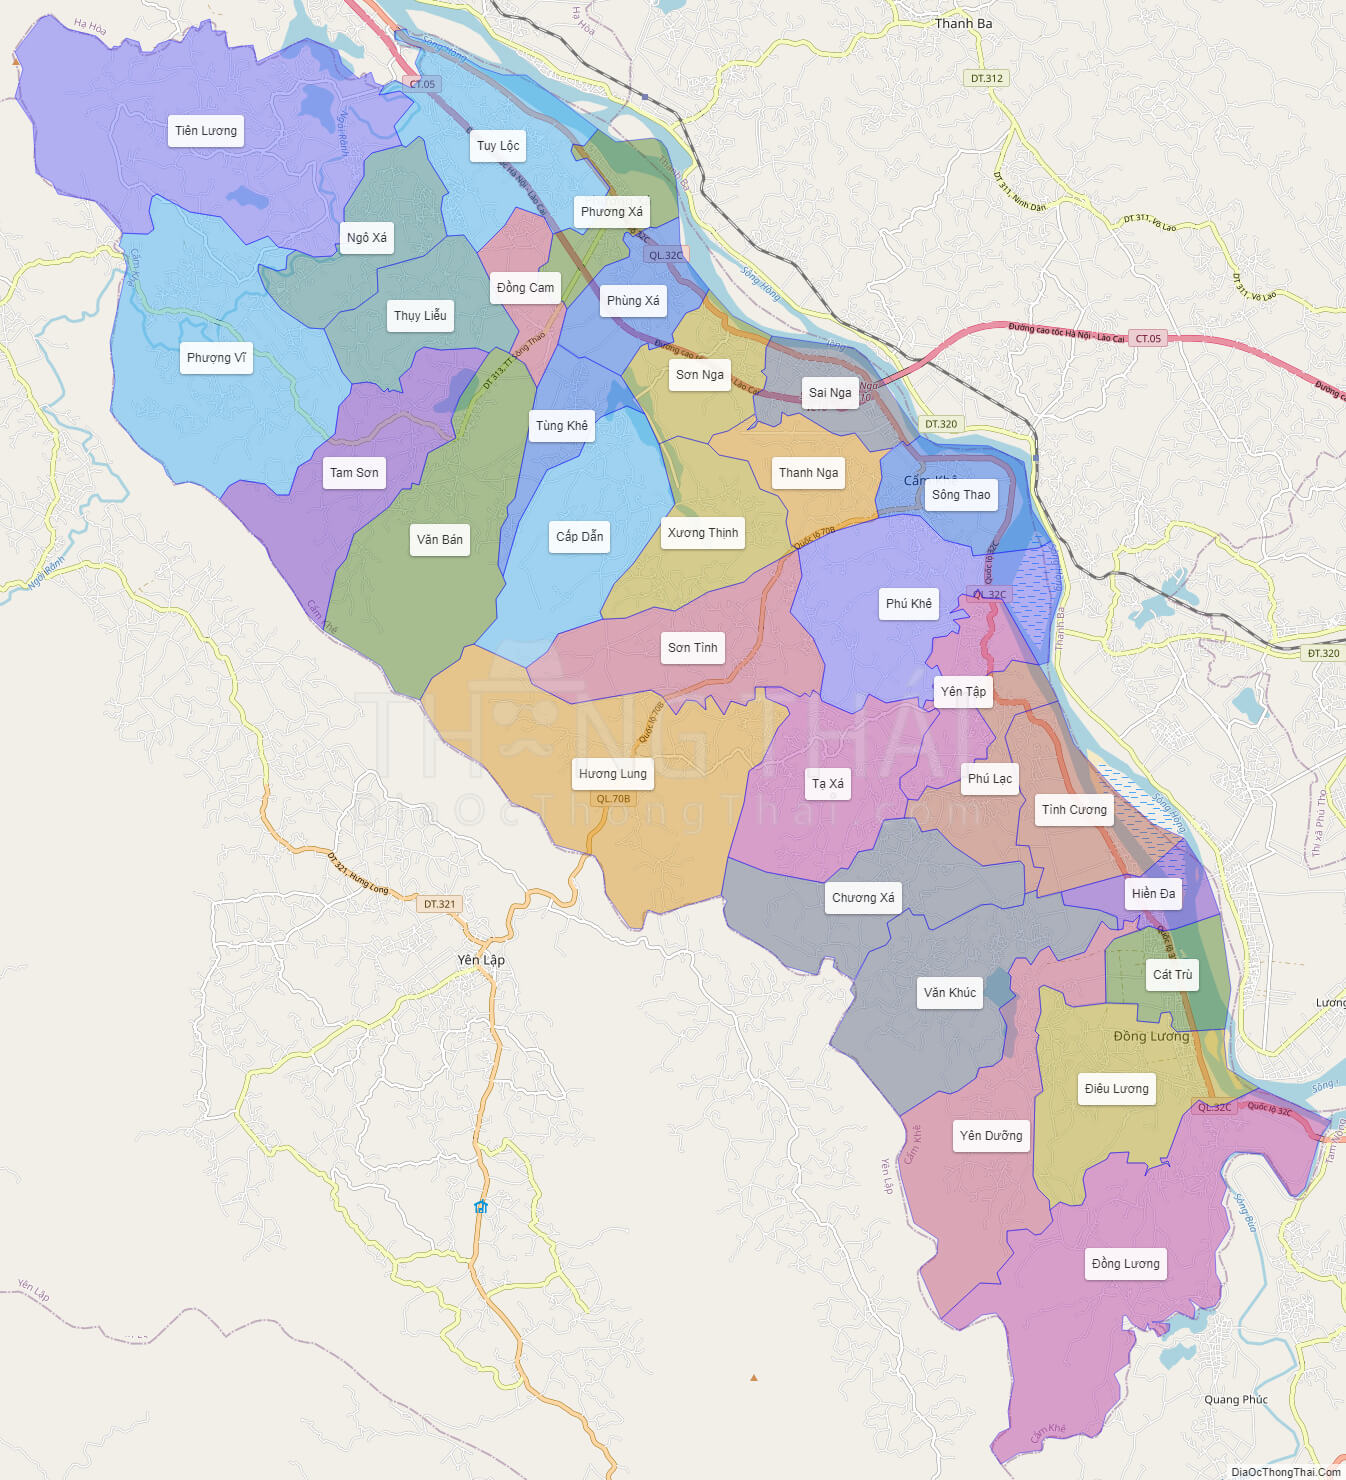 Bản đồ huyện Cẩm Khê - Địa ốc: Tìm kiếm mọi thứ bạn cần biết về thị trấn Cẩm Khê với bản đồ địa ốc mới nhất. Tìm hiểu về các dự án bất động sản đang được phát triển và khám phá tiềm năng đầy hứa hẹn của khu vực này.